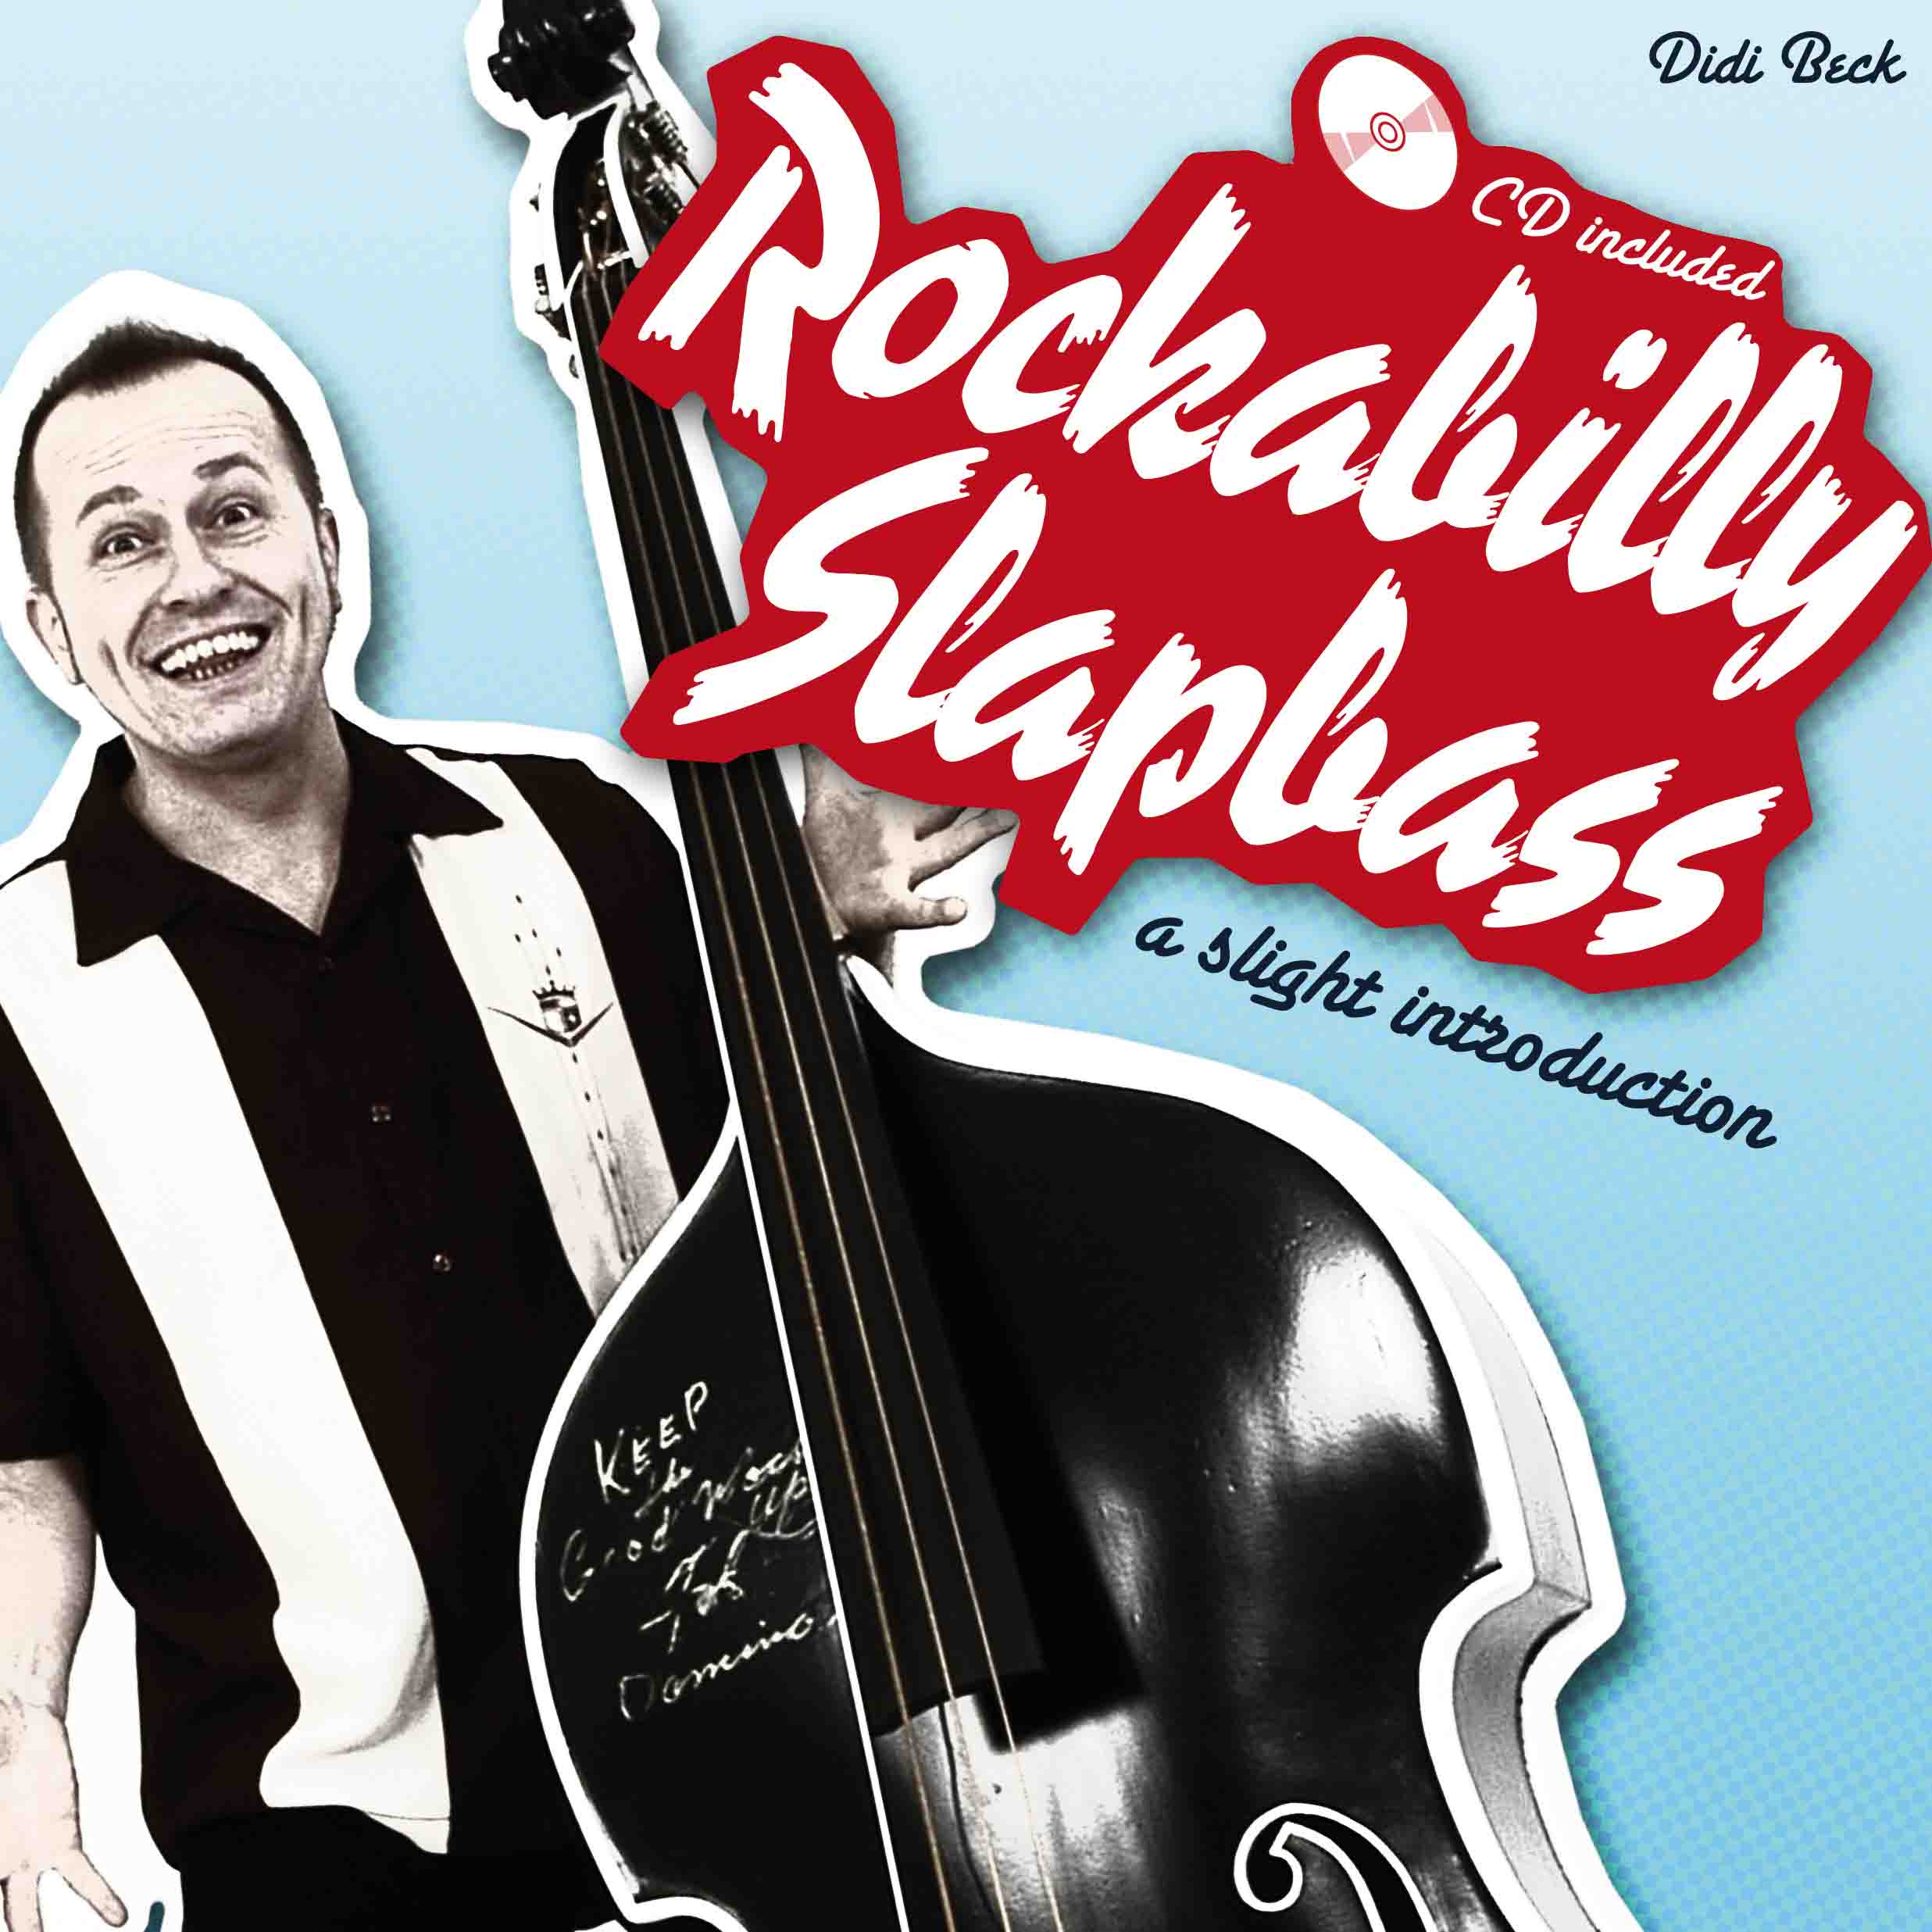 instructional rockabilly and psychobilly upright slap bass book